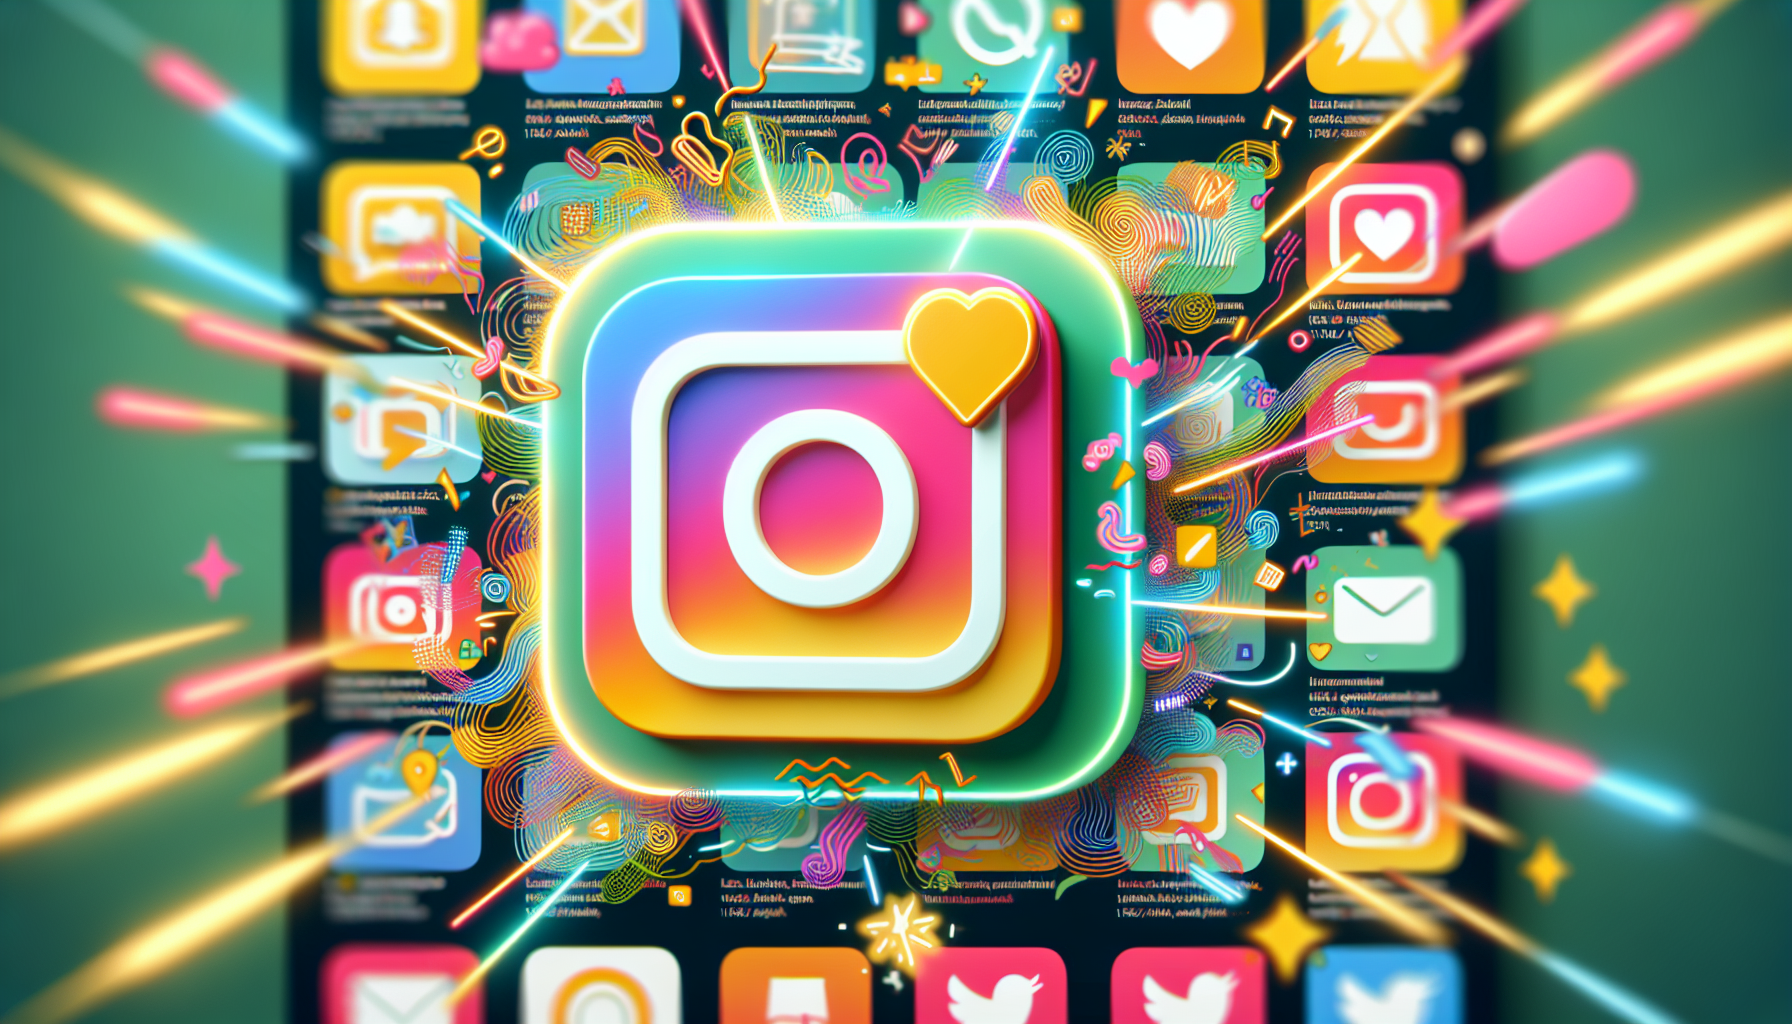 Erhöhung der Sichtbarkeit mit Instagram-Notizen